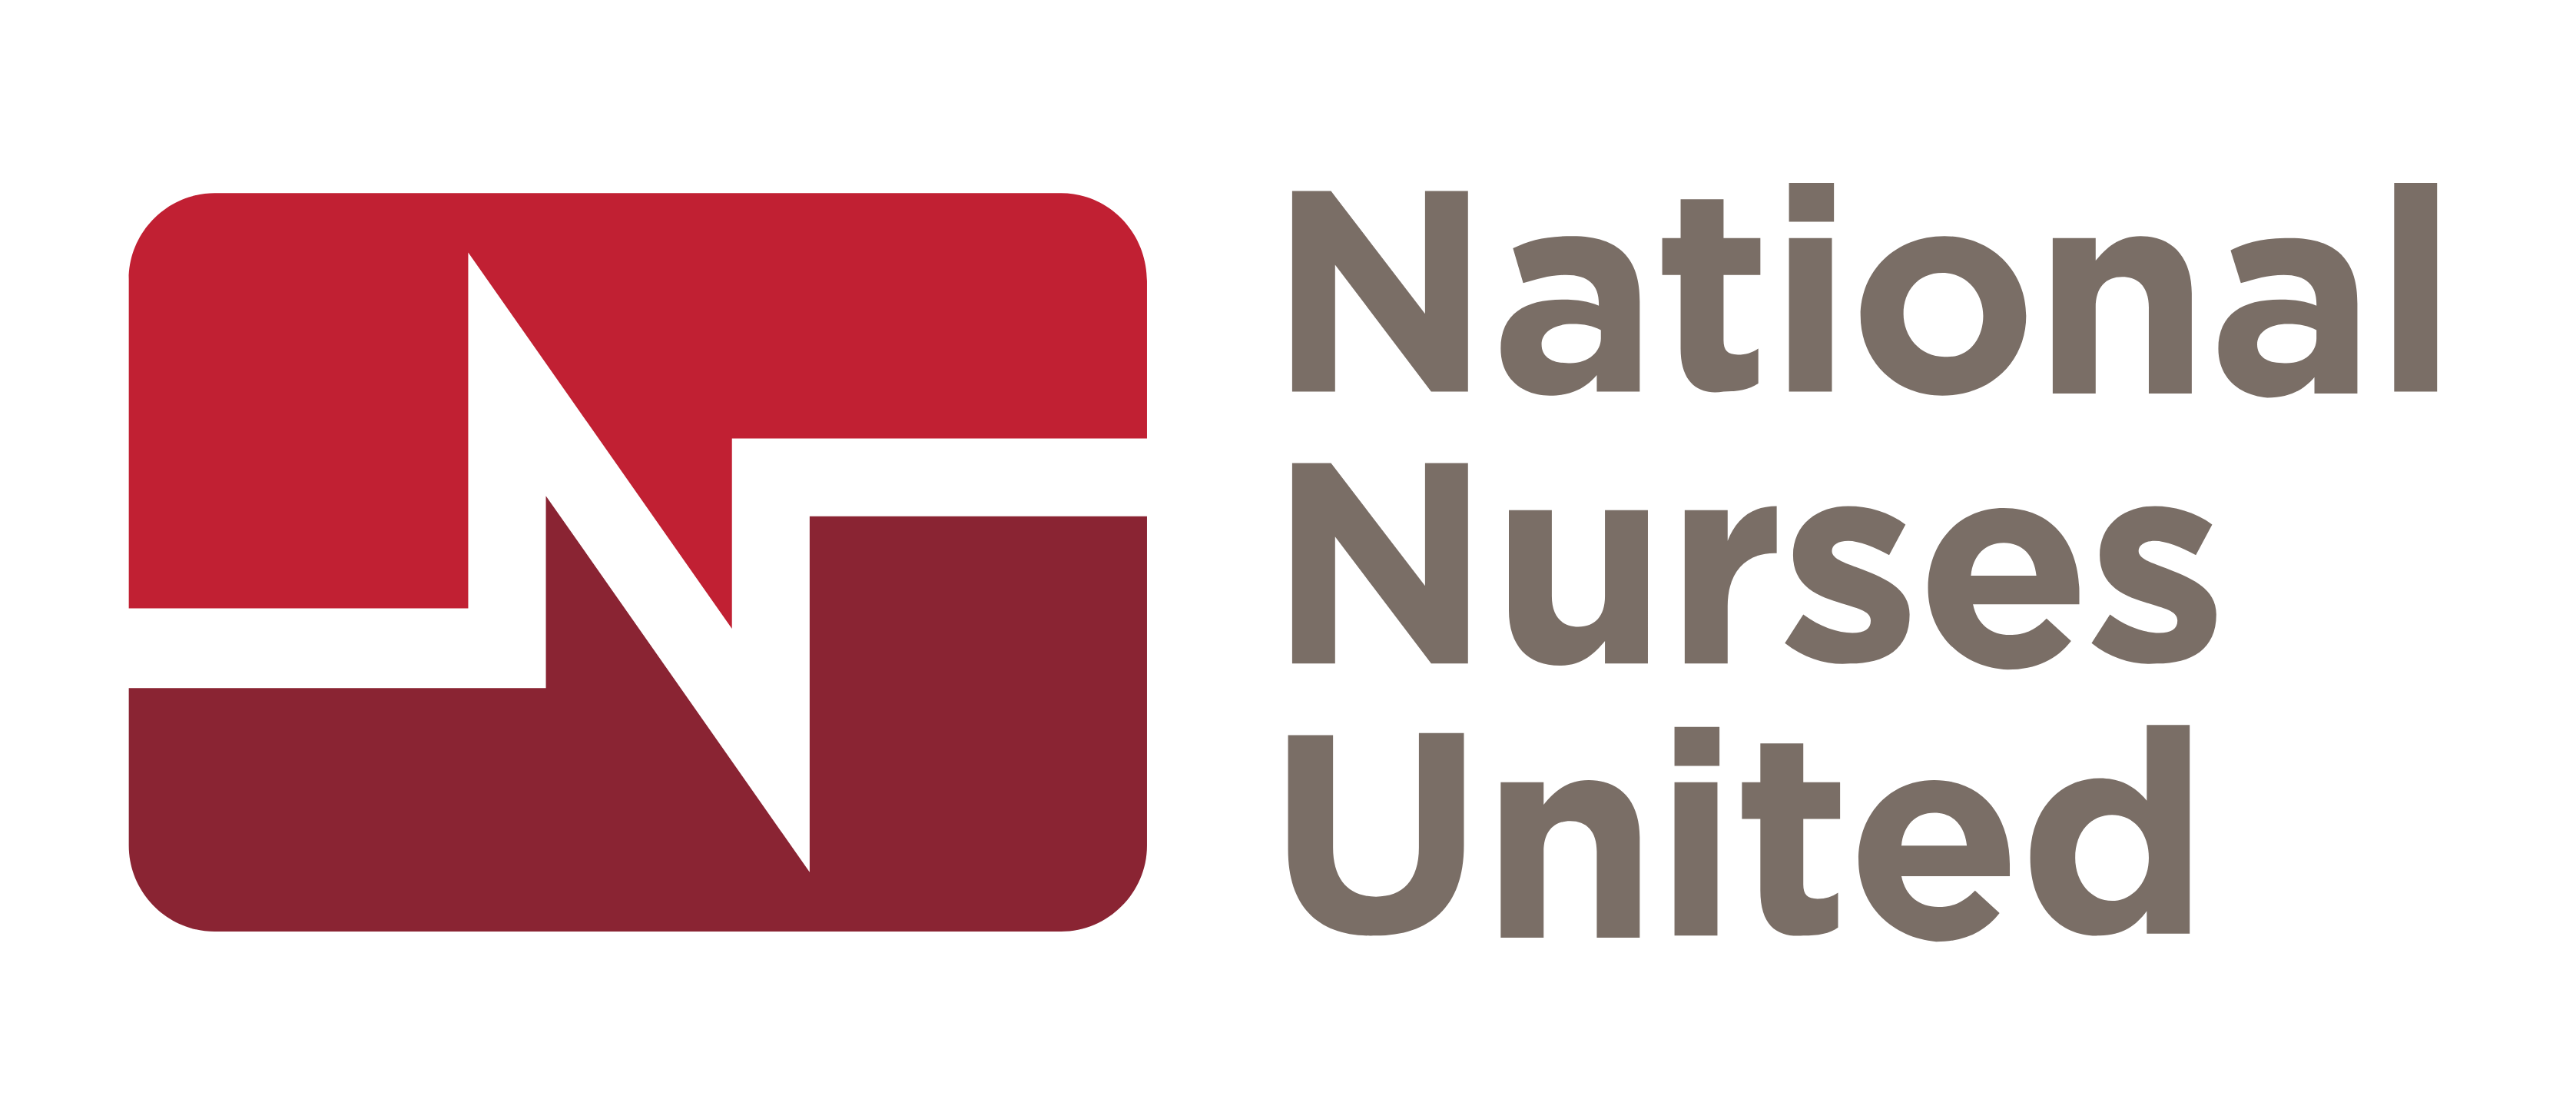 National Nurses United Logo